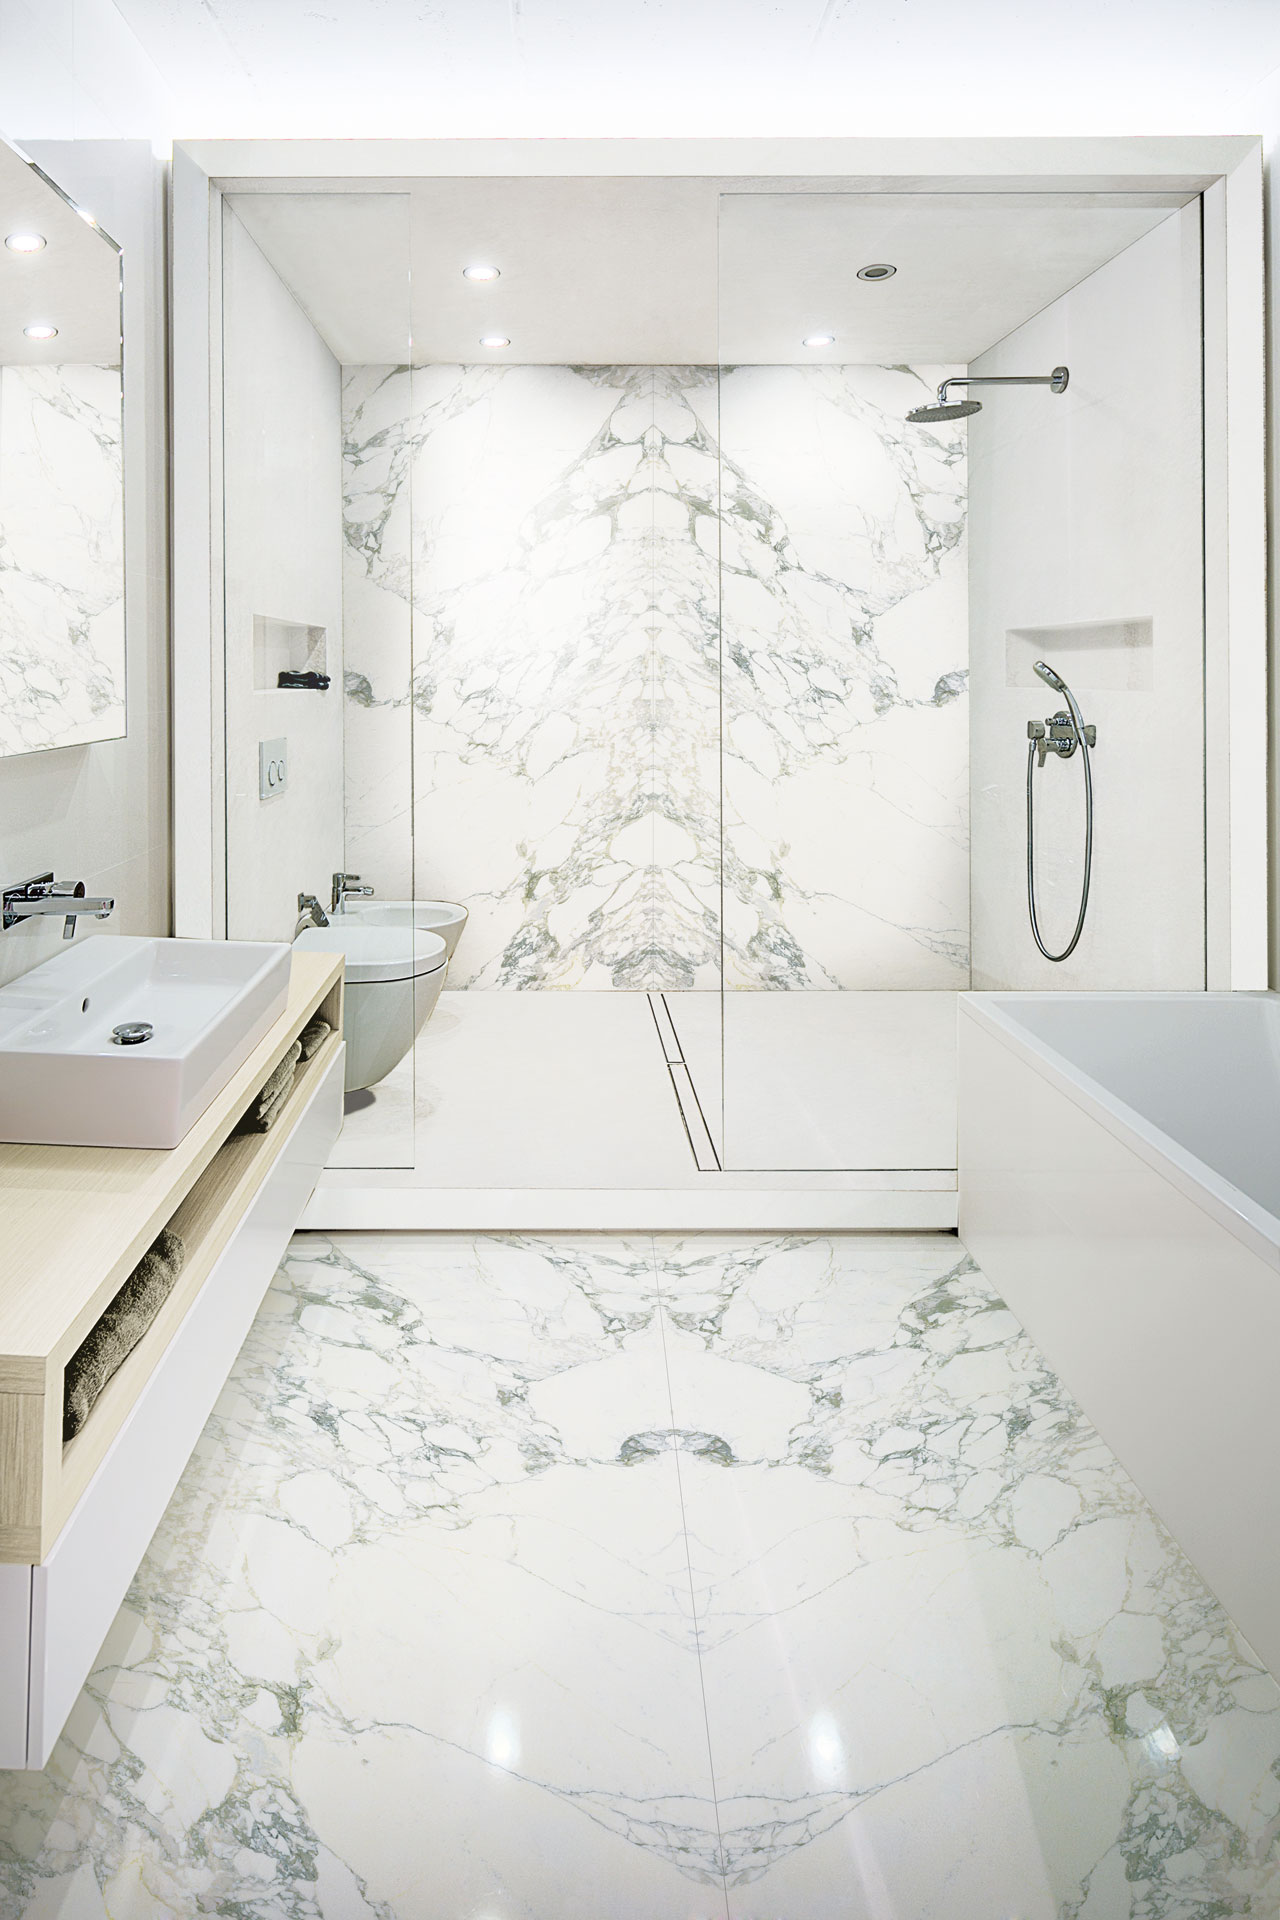 img/bathroom-tile-designs-2018.jpg